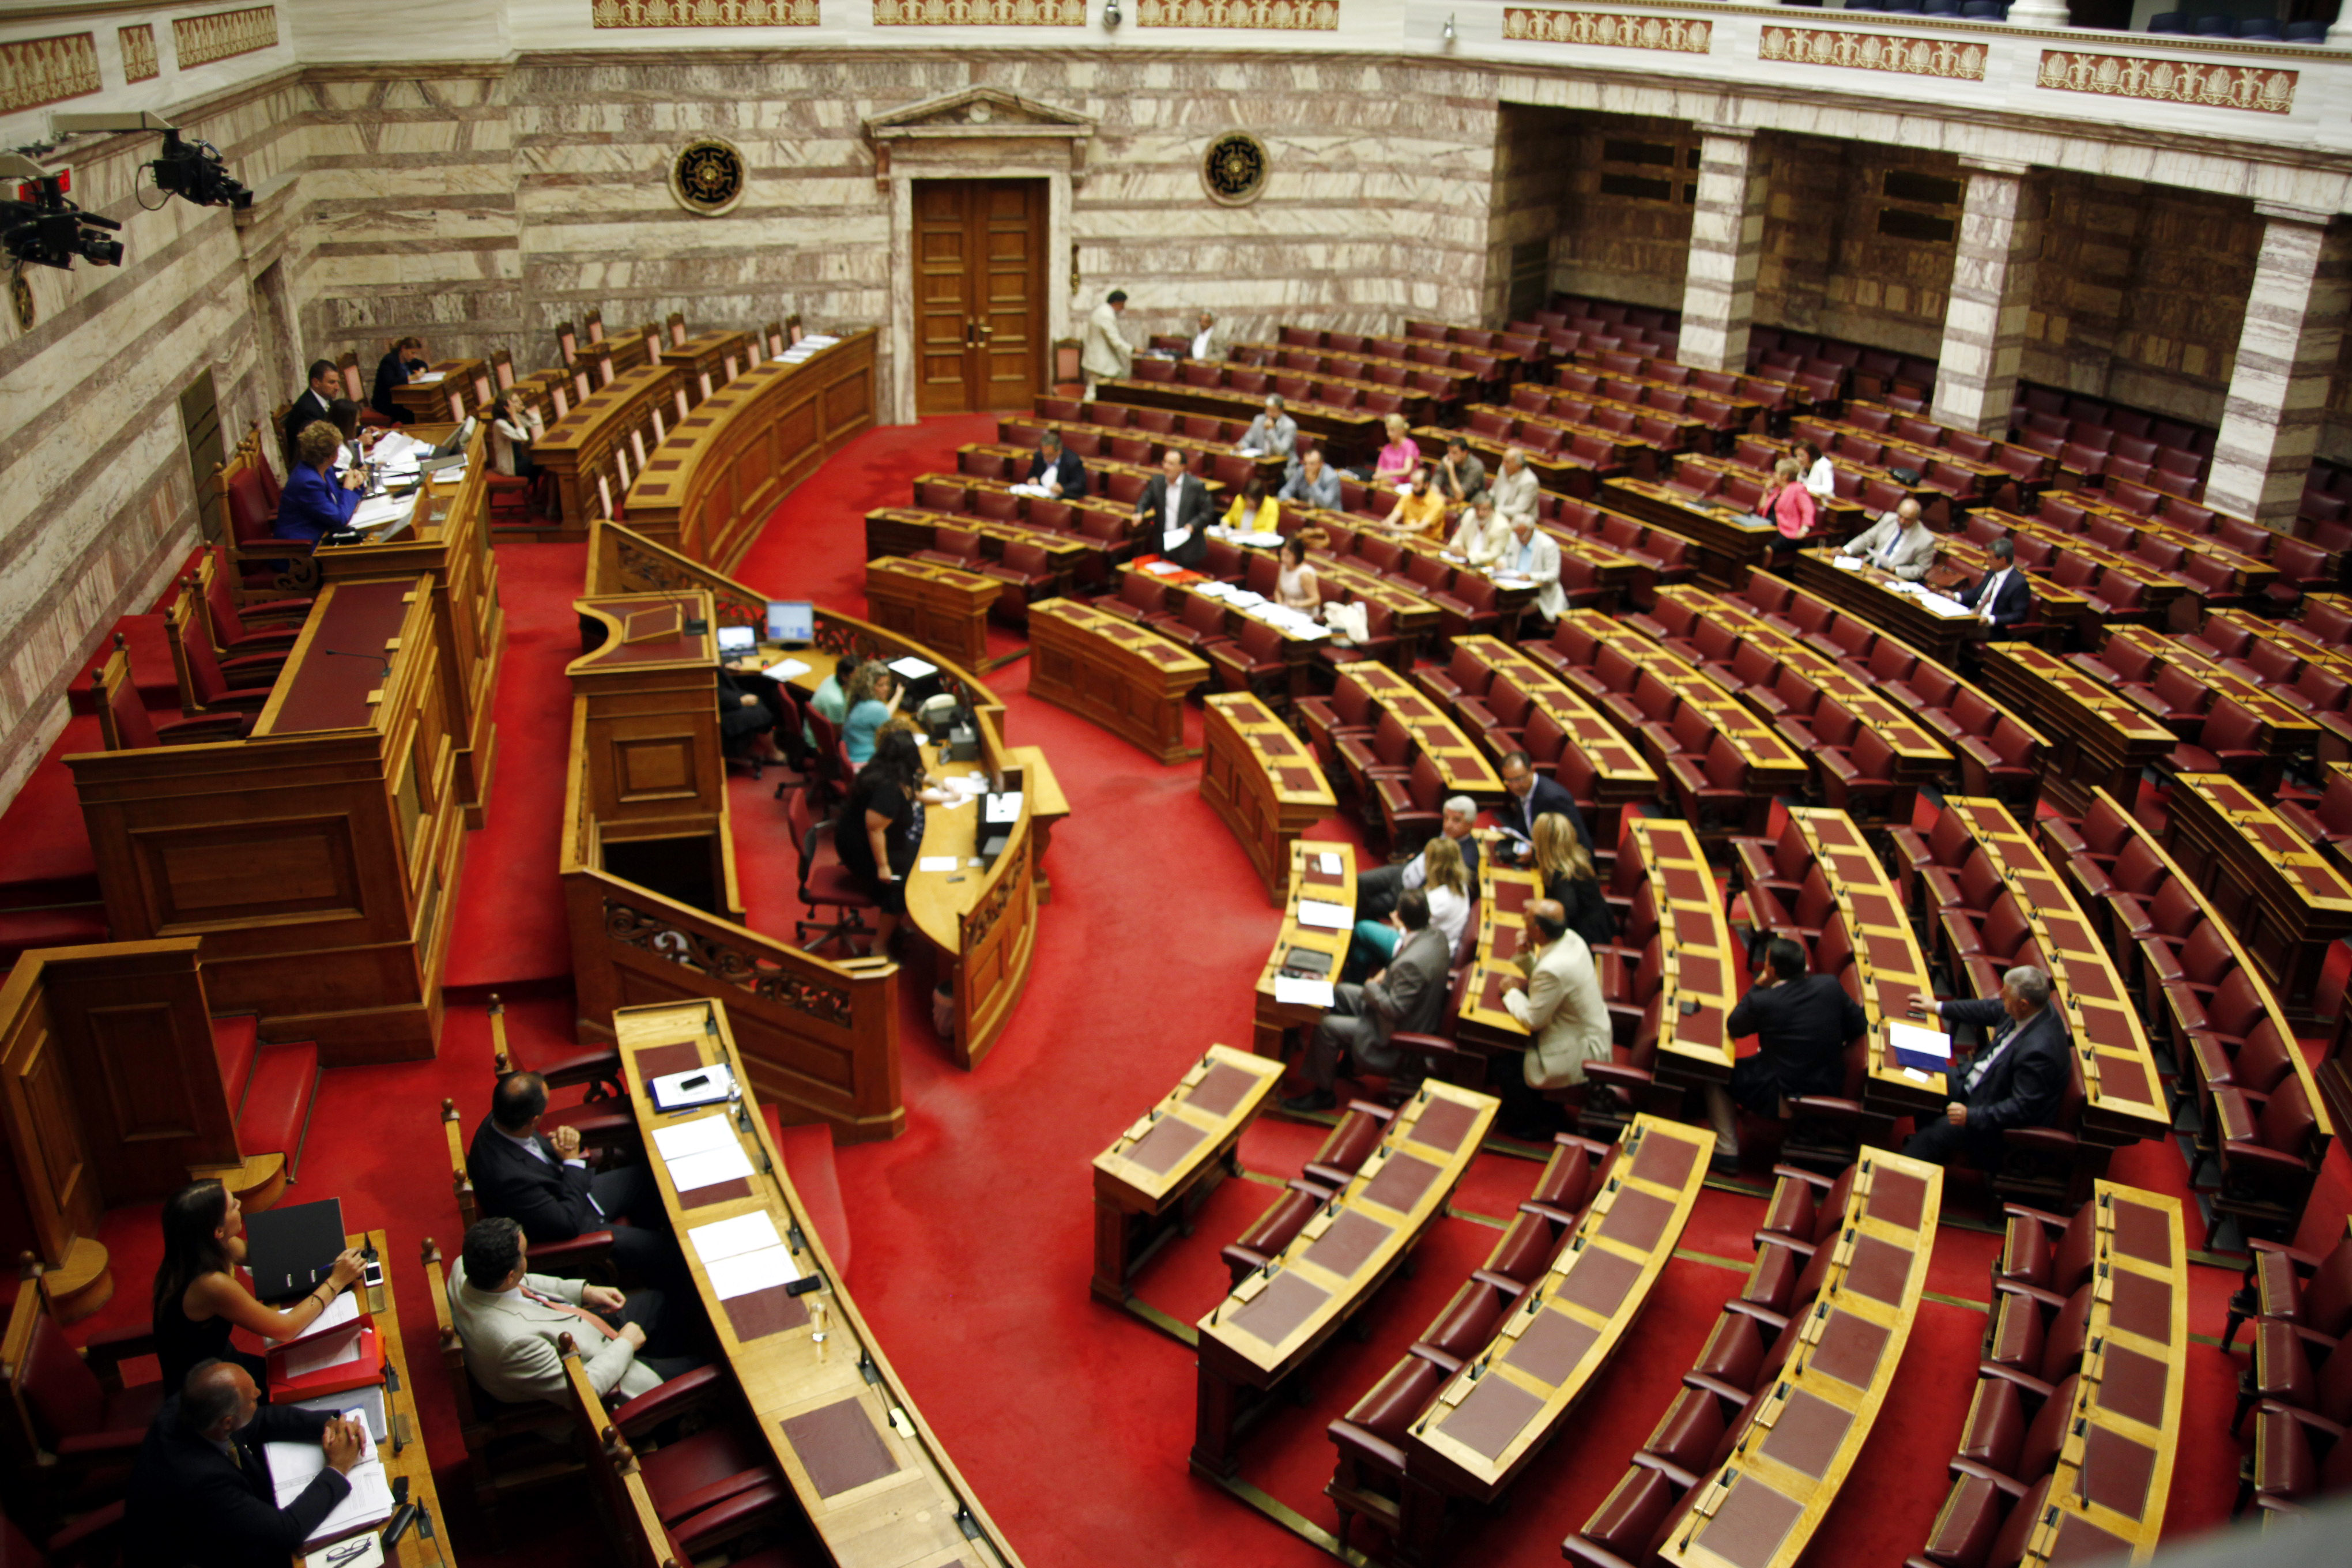 Βροχή από τροπολογίες εκτός θέματος στο νόμο για τη Ζώνη Καινοτομίας στη Θεσσαλονίκη